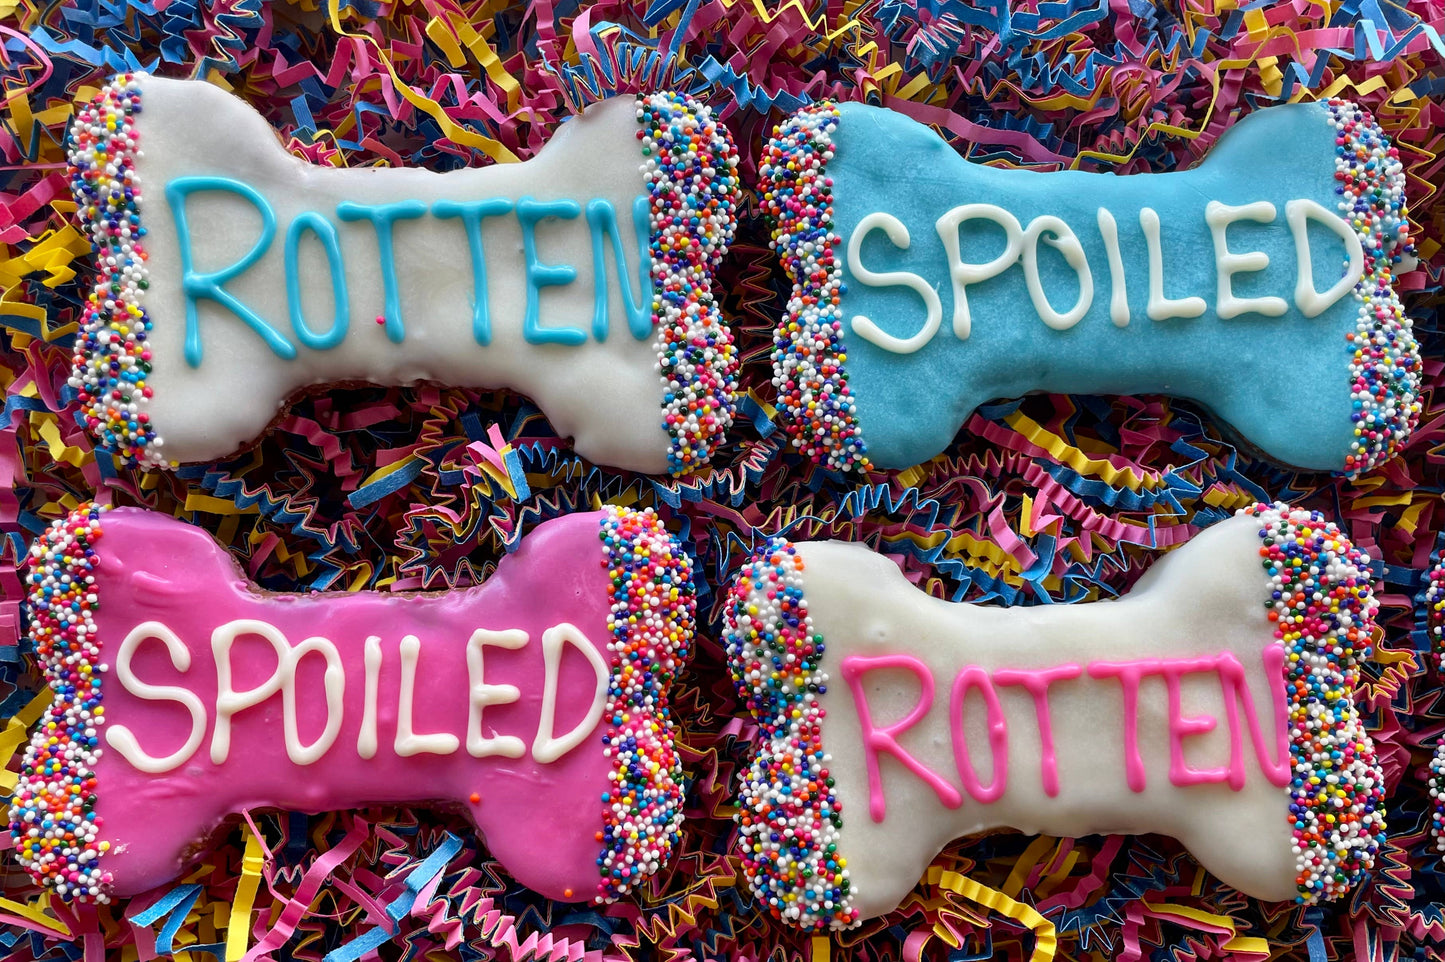 Spoiled Rotten dog bone treats